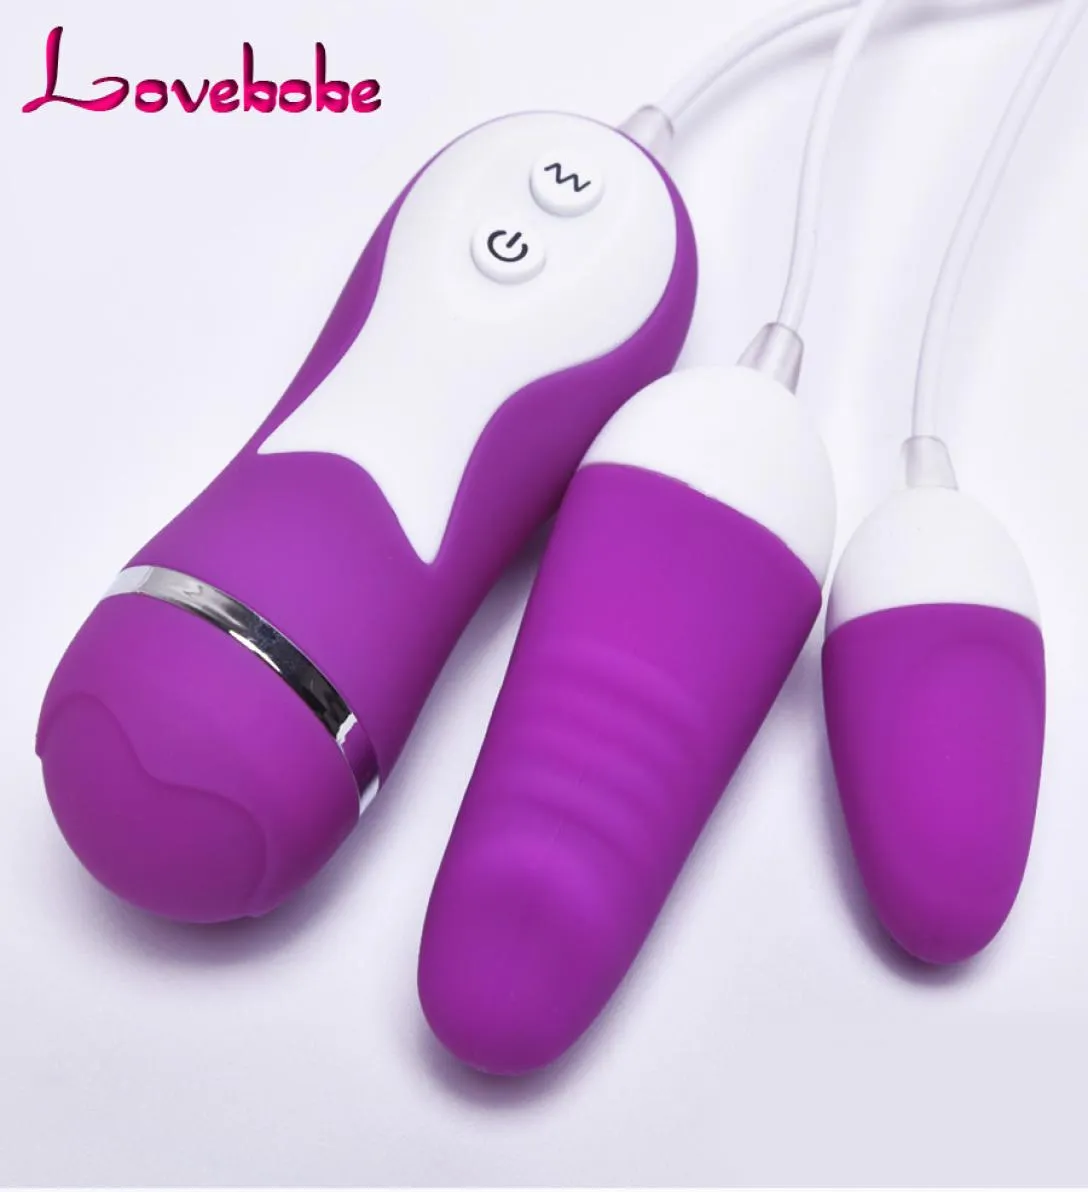 Nieuwe kegel vaginale ballen voor vrouwen 2 vibrerende eieren massage slimme strakke oefening eierbal siliconen anale seksproducten volwassen speelgoed y16070901